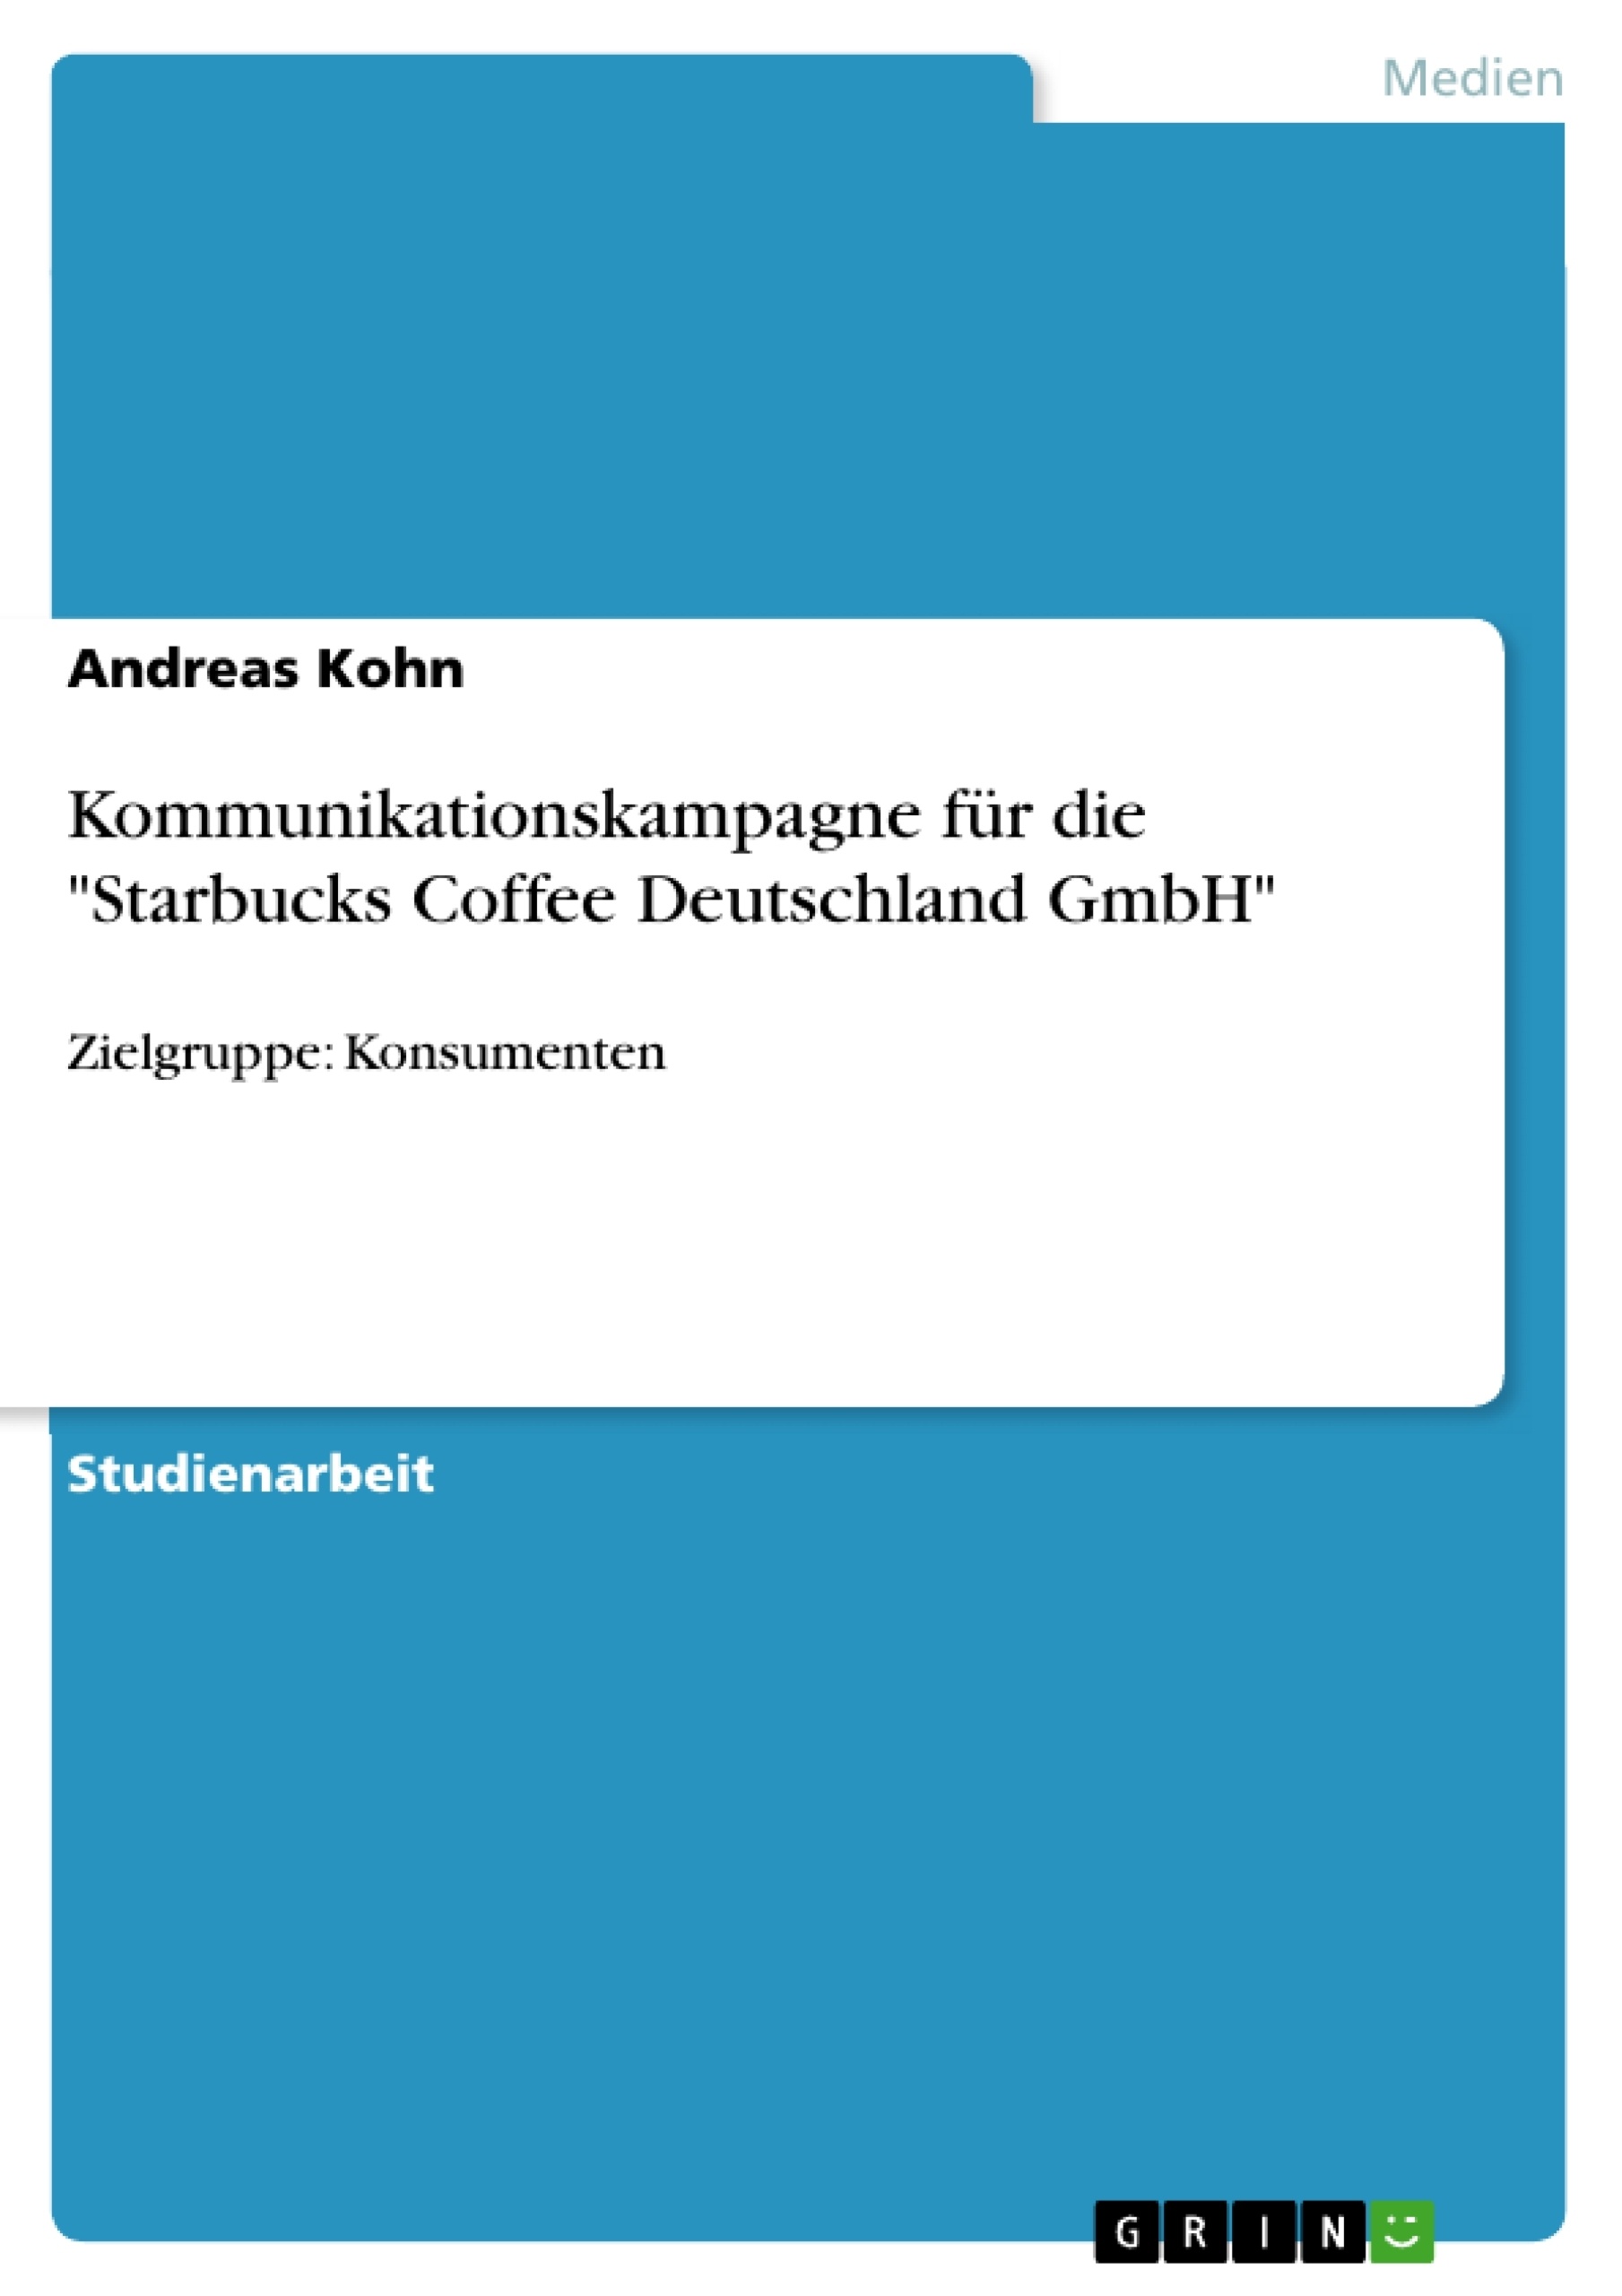 Título: Kommunikationskampagne für die "Starbucks Coffee Deutschland GmbH"